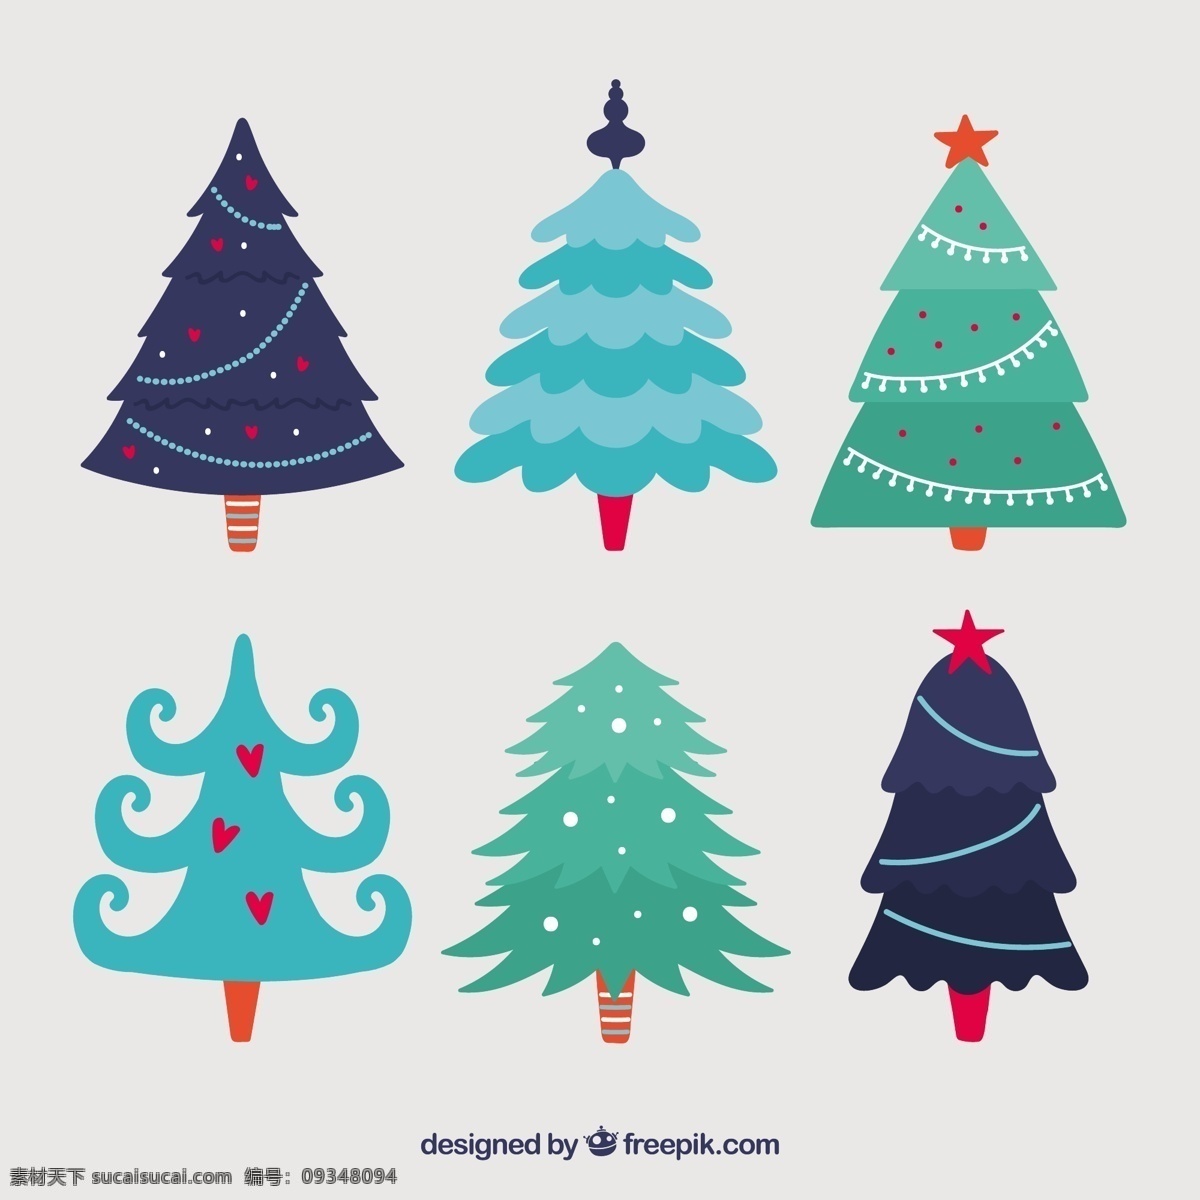 可爱的圣诞树 圣诞树 自然 圣诞快乐 冬天快乐 圣诞 庆祝 可爱的节日 树 节日快乐 可爱 季节 节日 快乐 十二月 收集 灰色